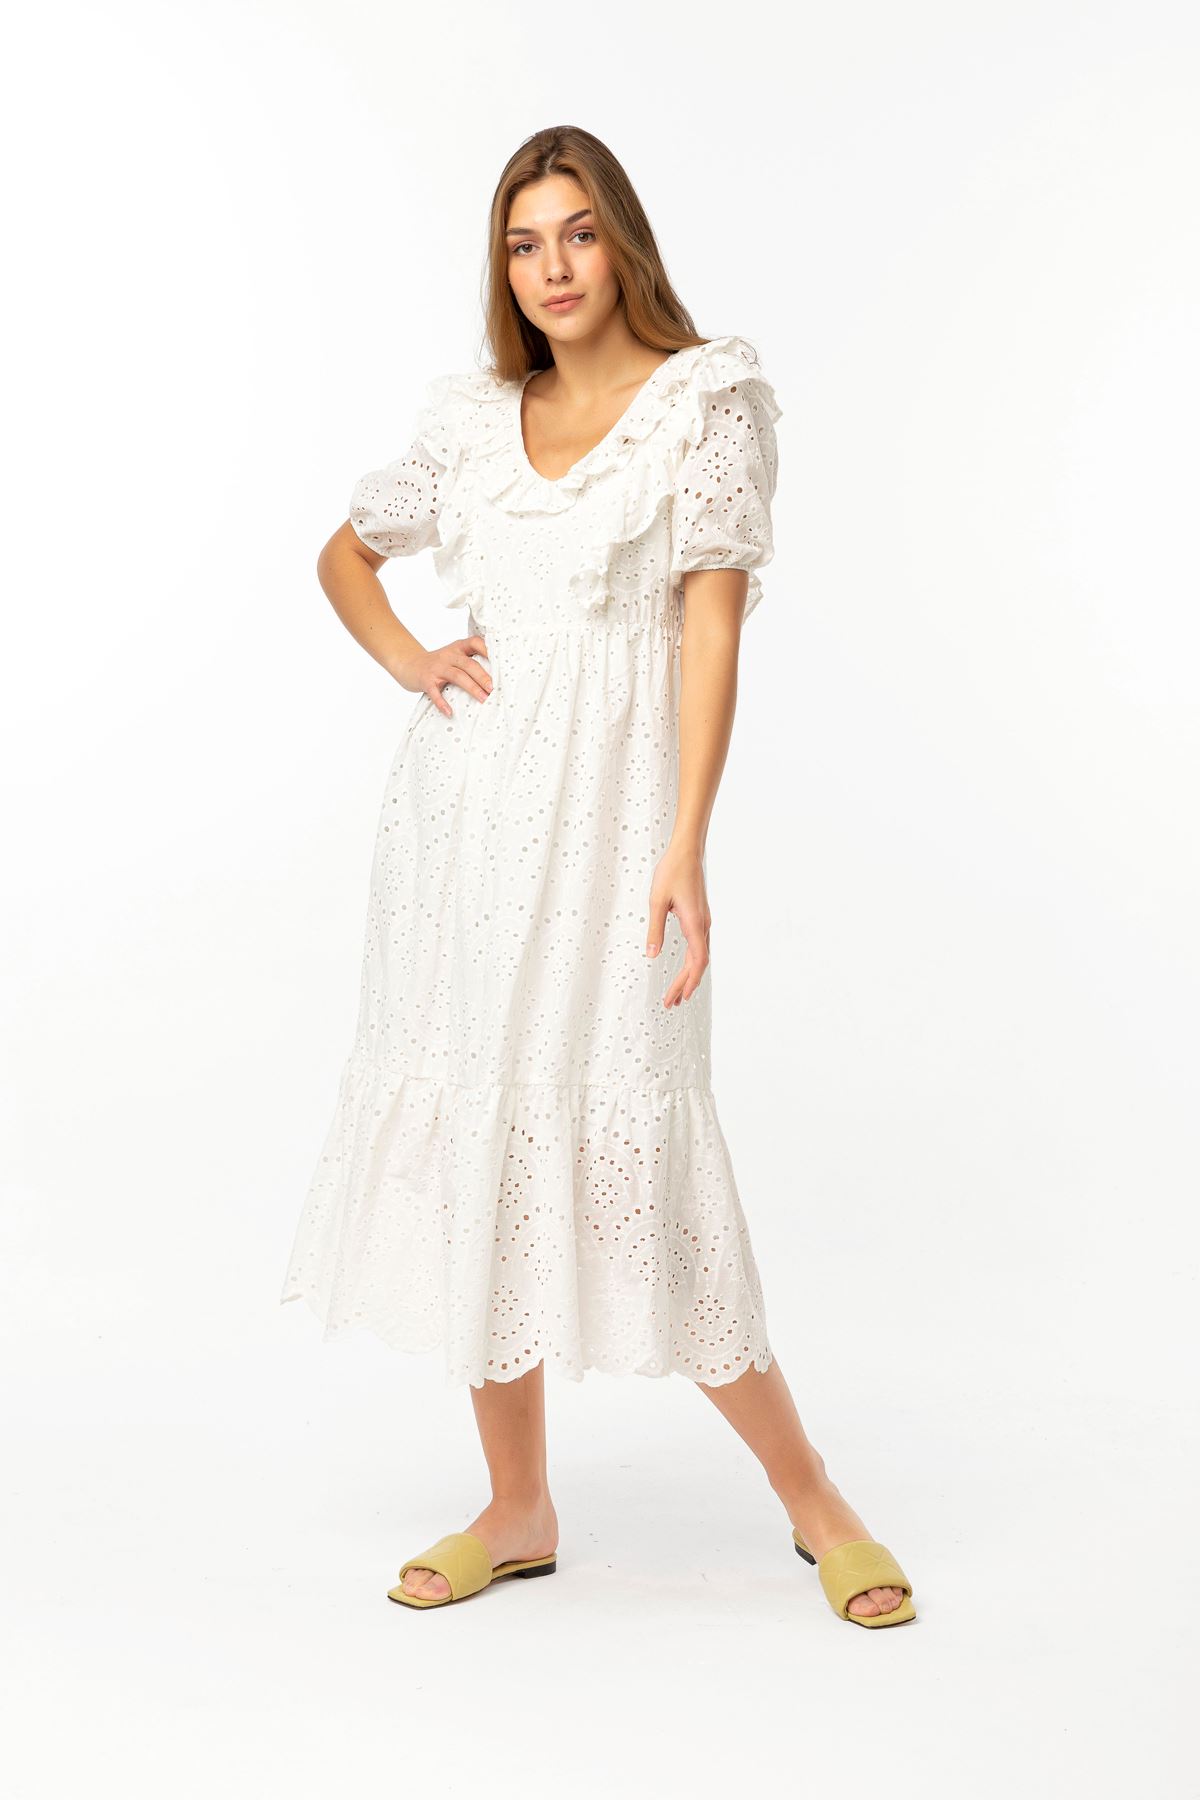 Вуаль Ткань короткий воротник с воланами женское платье - Молочный